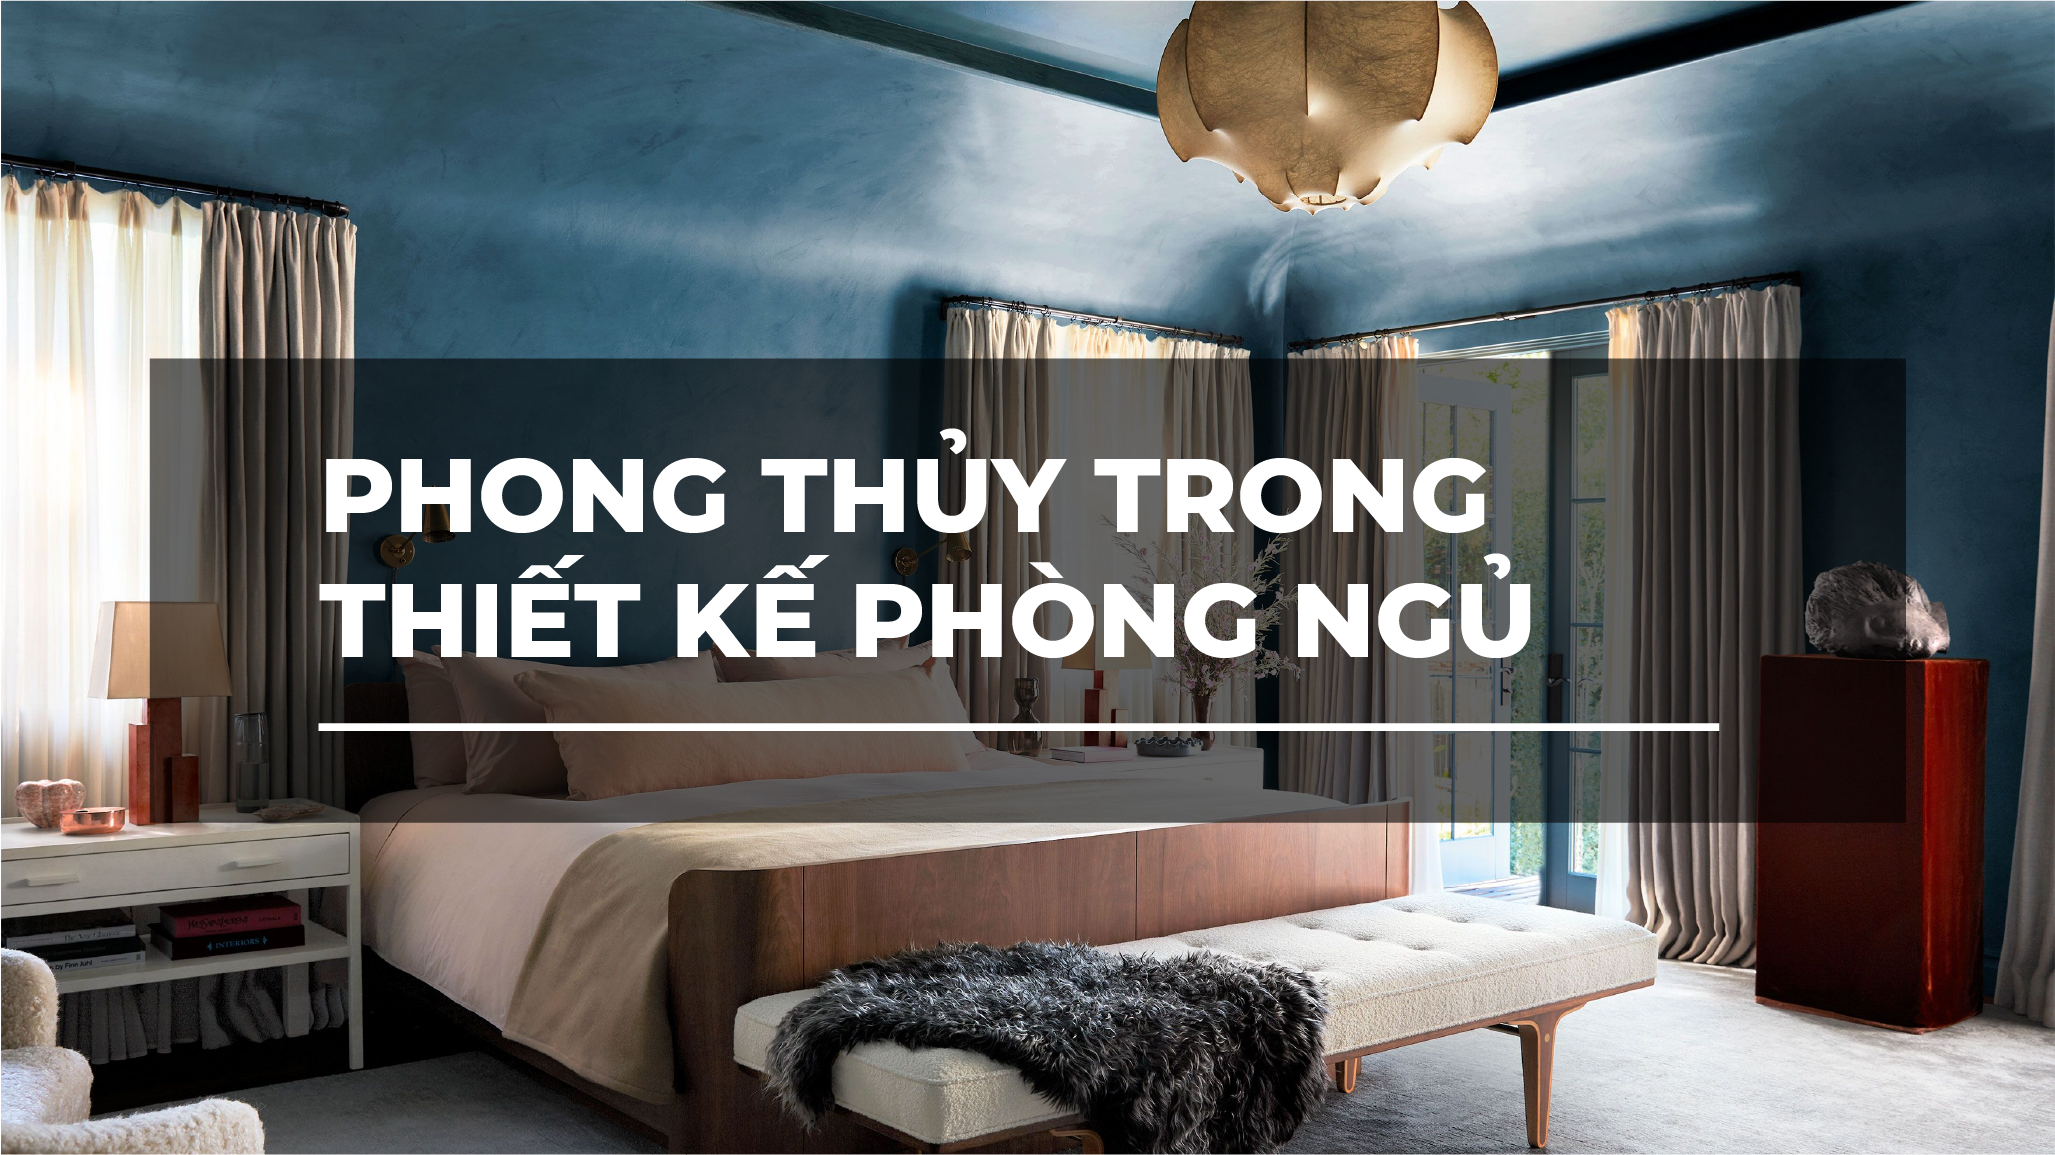 PHONG THỦY TRONG THIẾT KẾ PHÒNG NGỦ